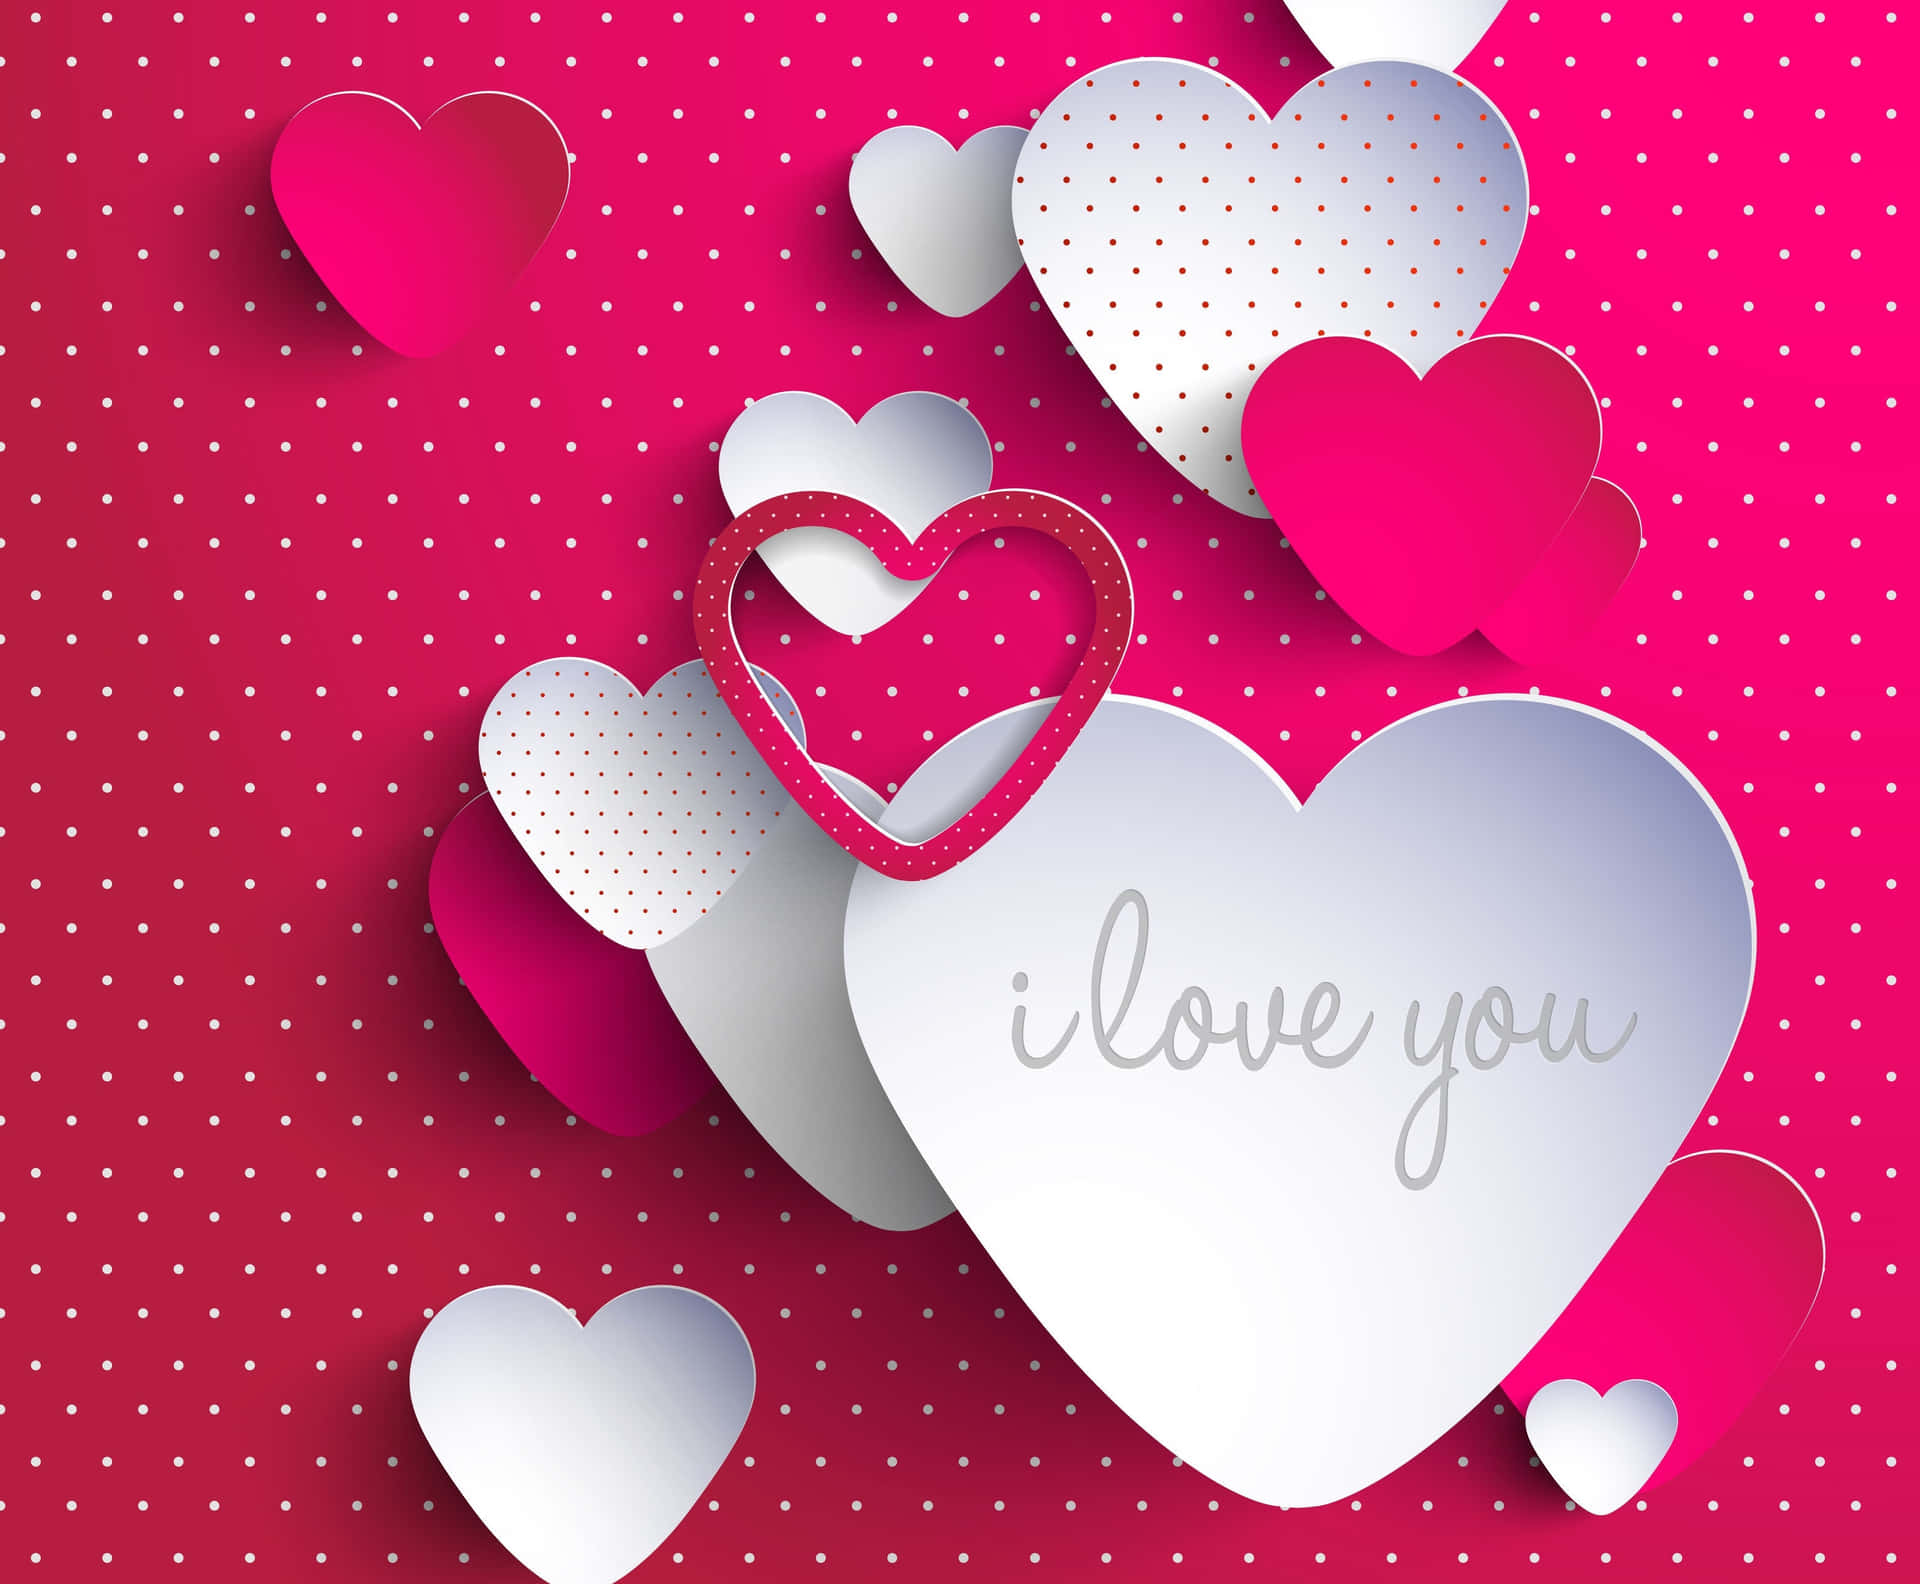 love heart wallpaper for desktop